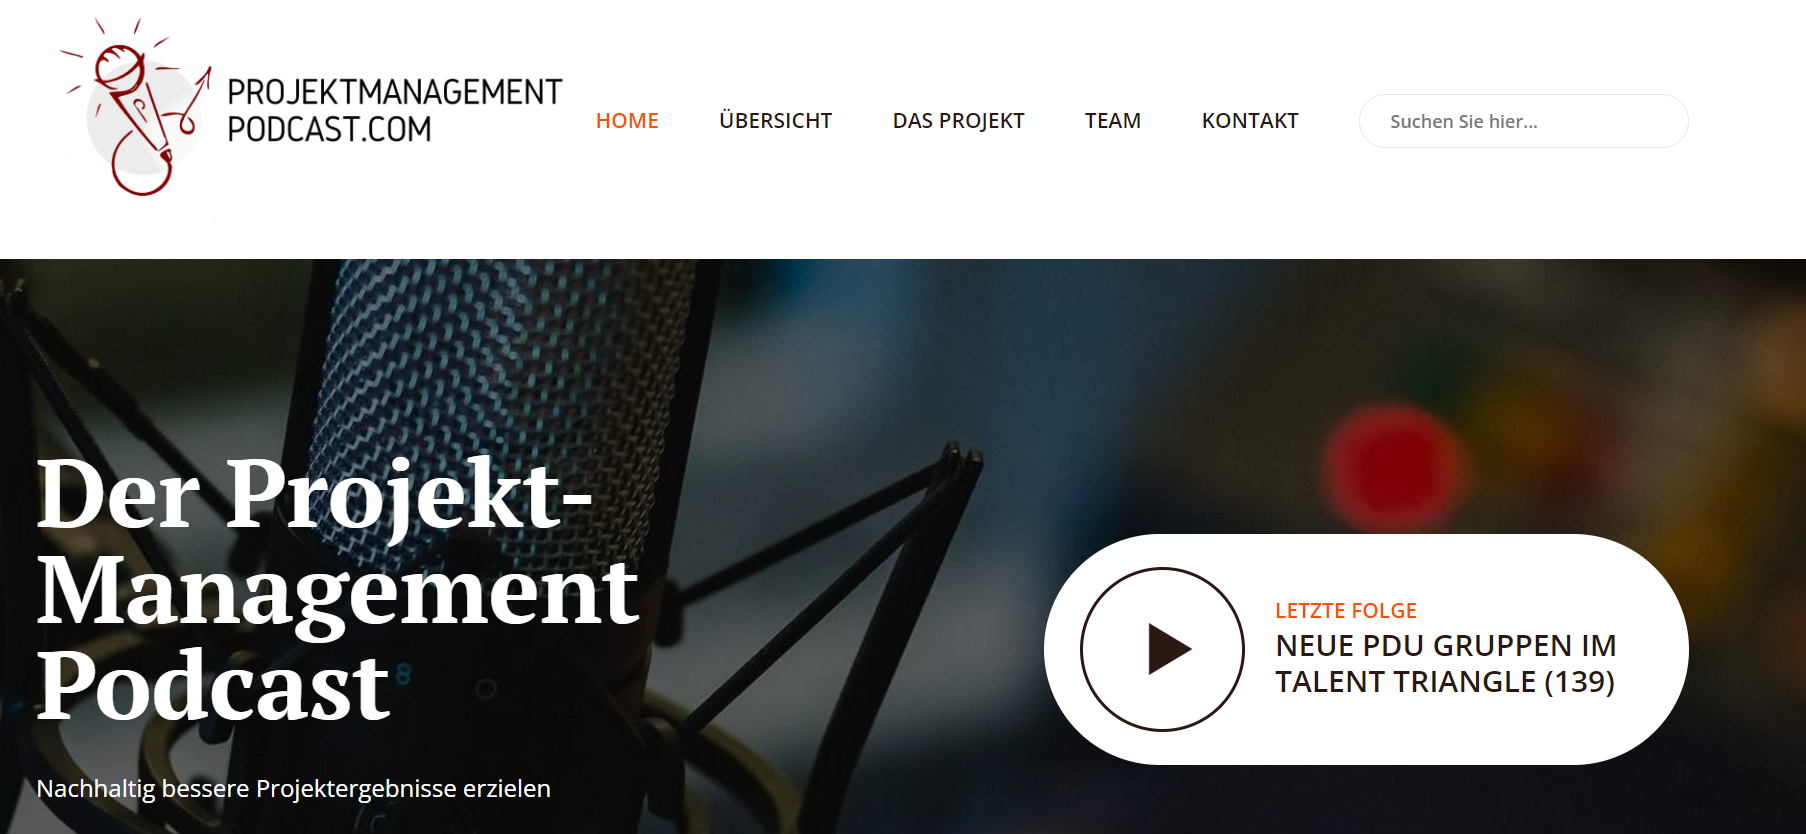 Der Projekt-Management Podcast